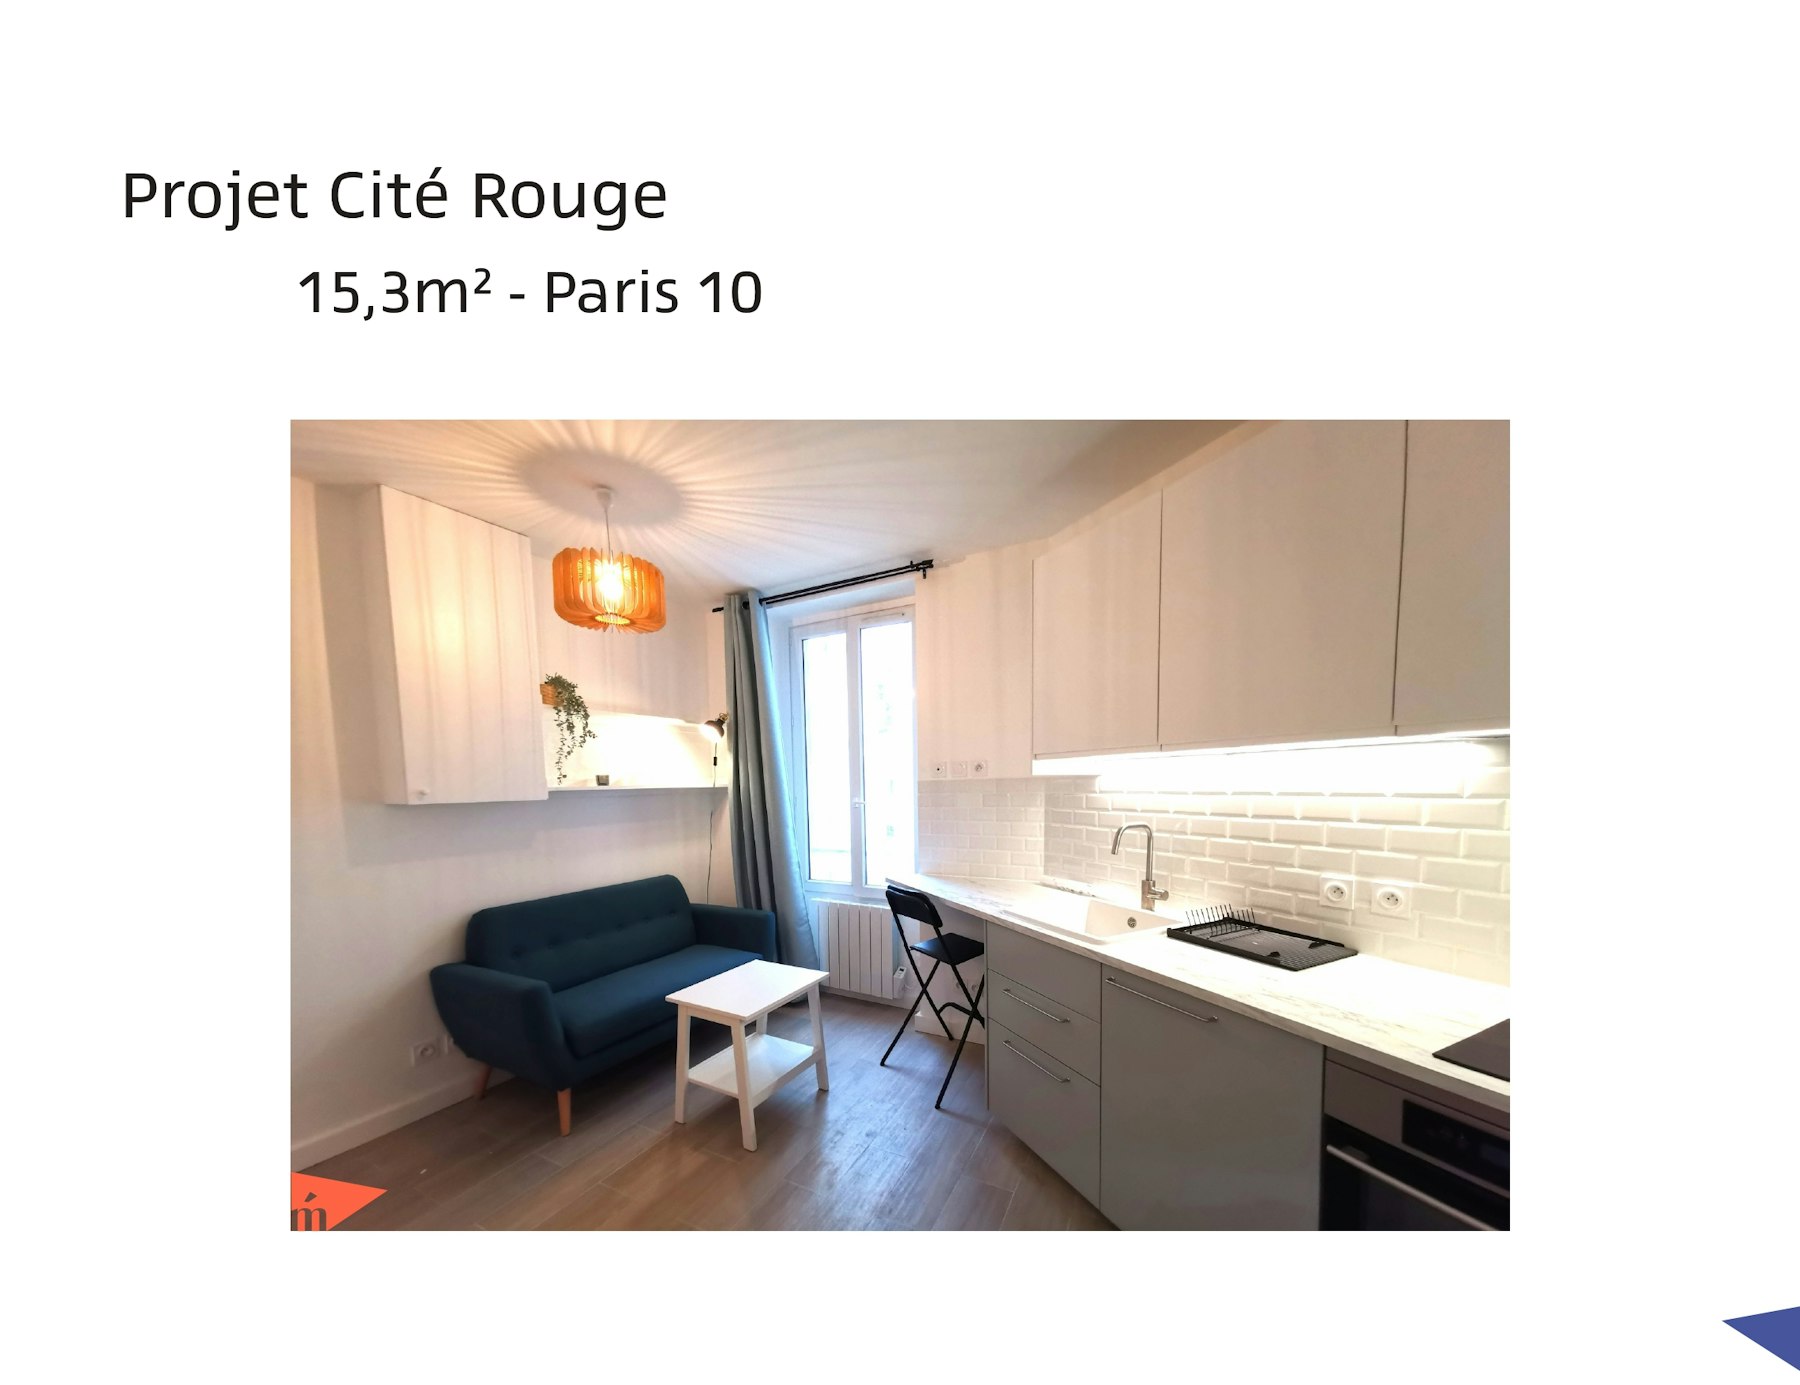 photo Projet Cité Rouge - Studio 15,3m² - Paris 10 Léa Mast - Architecte hemea